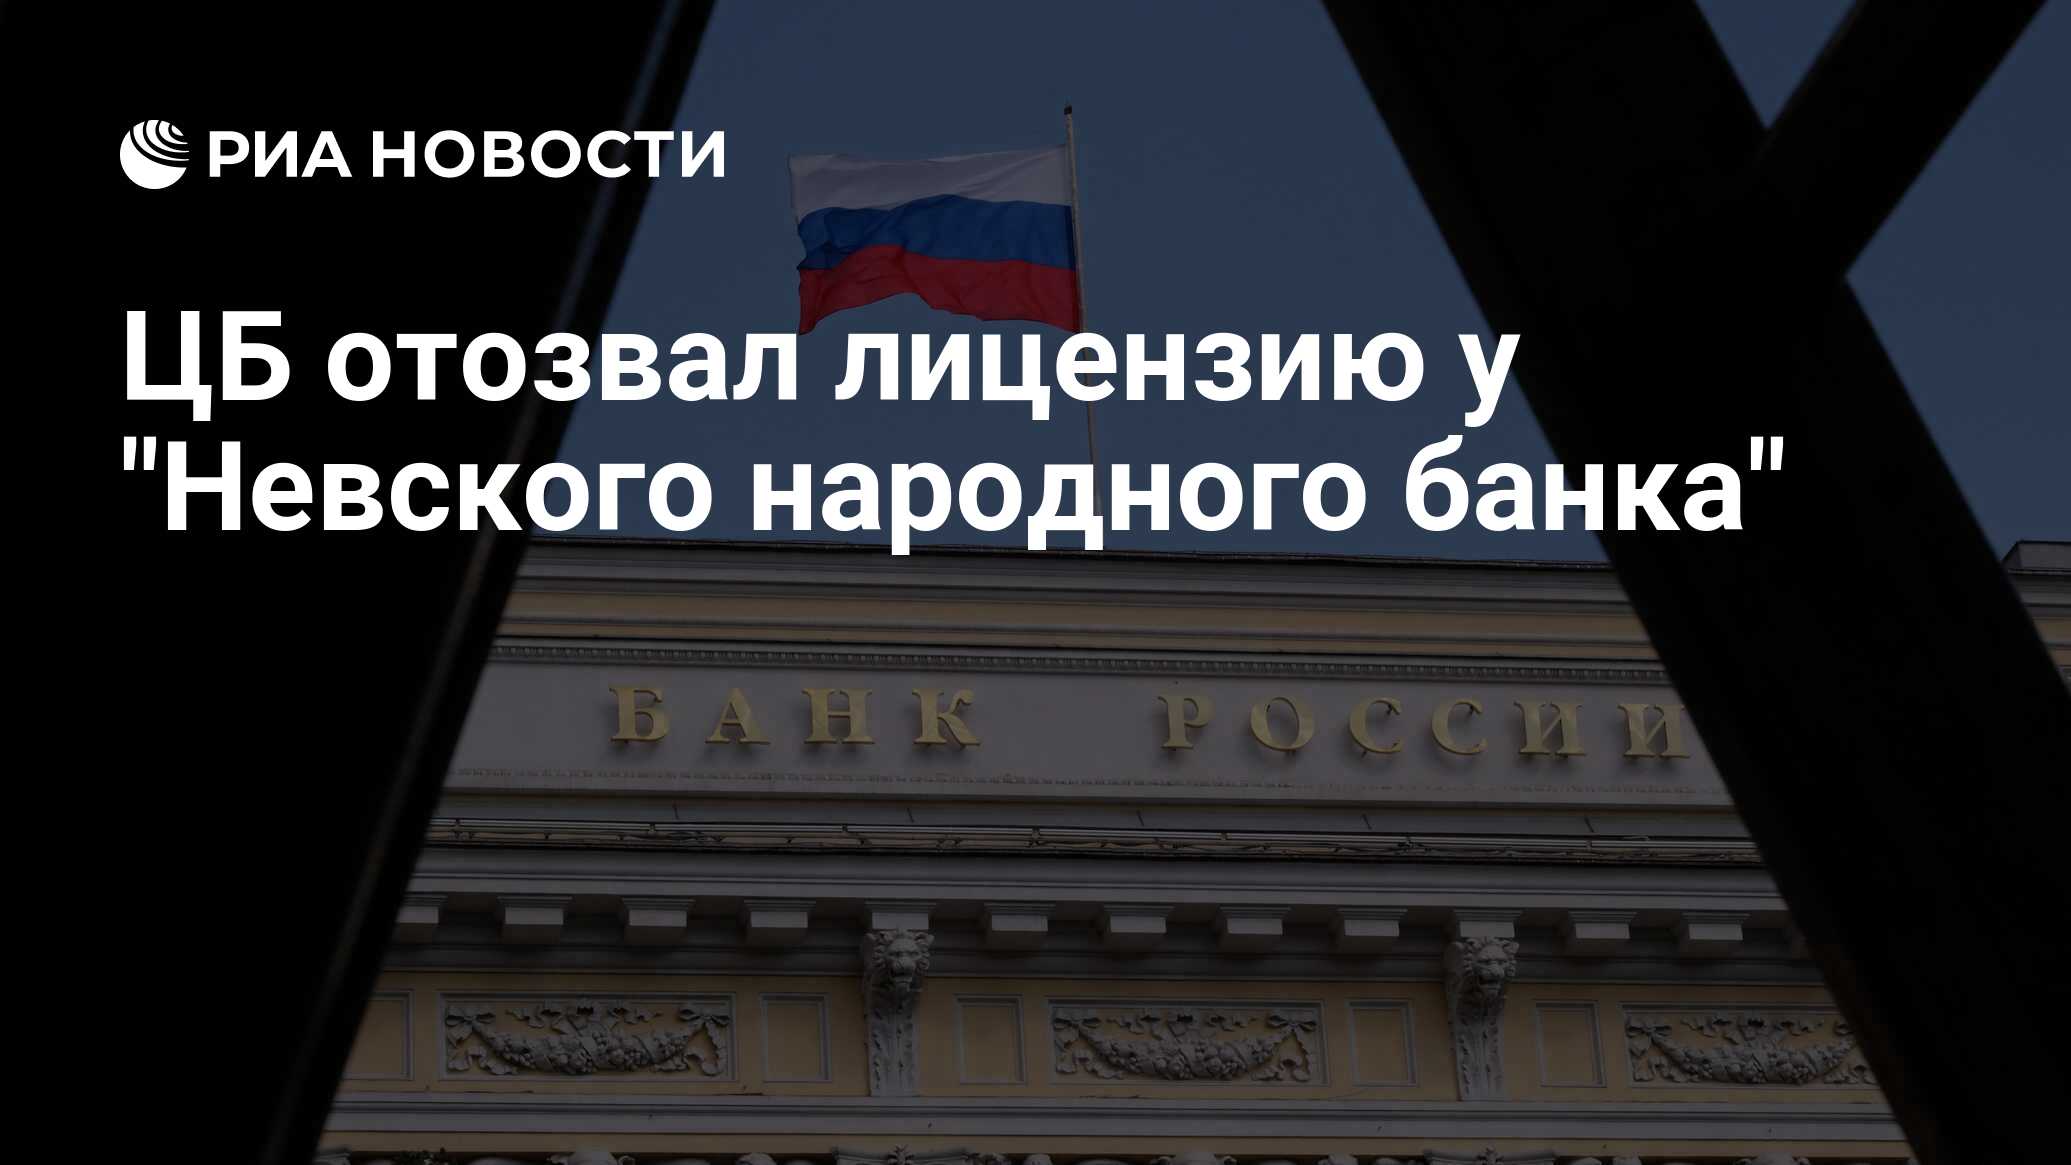 Риа банк новости. Русский народный банк отозвали лицензию.